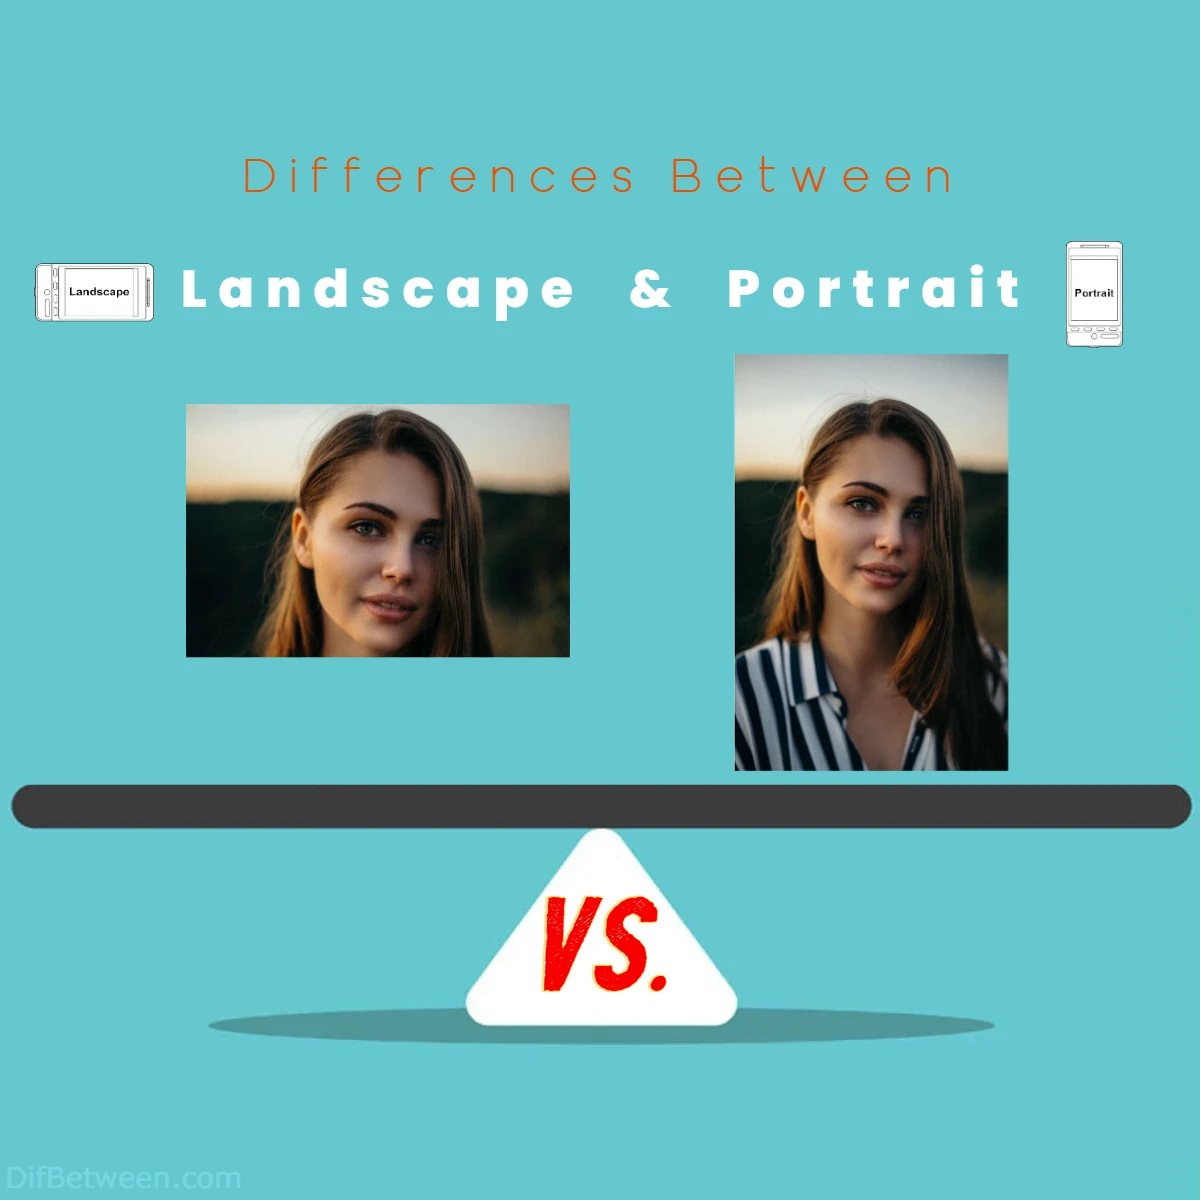 Differences Between Landscape vs Portrait